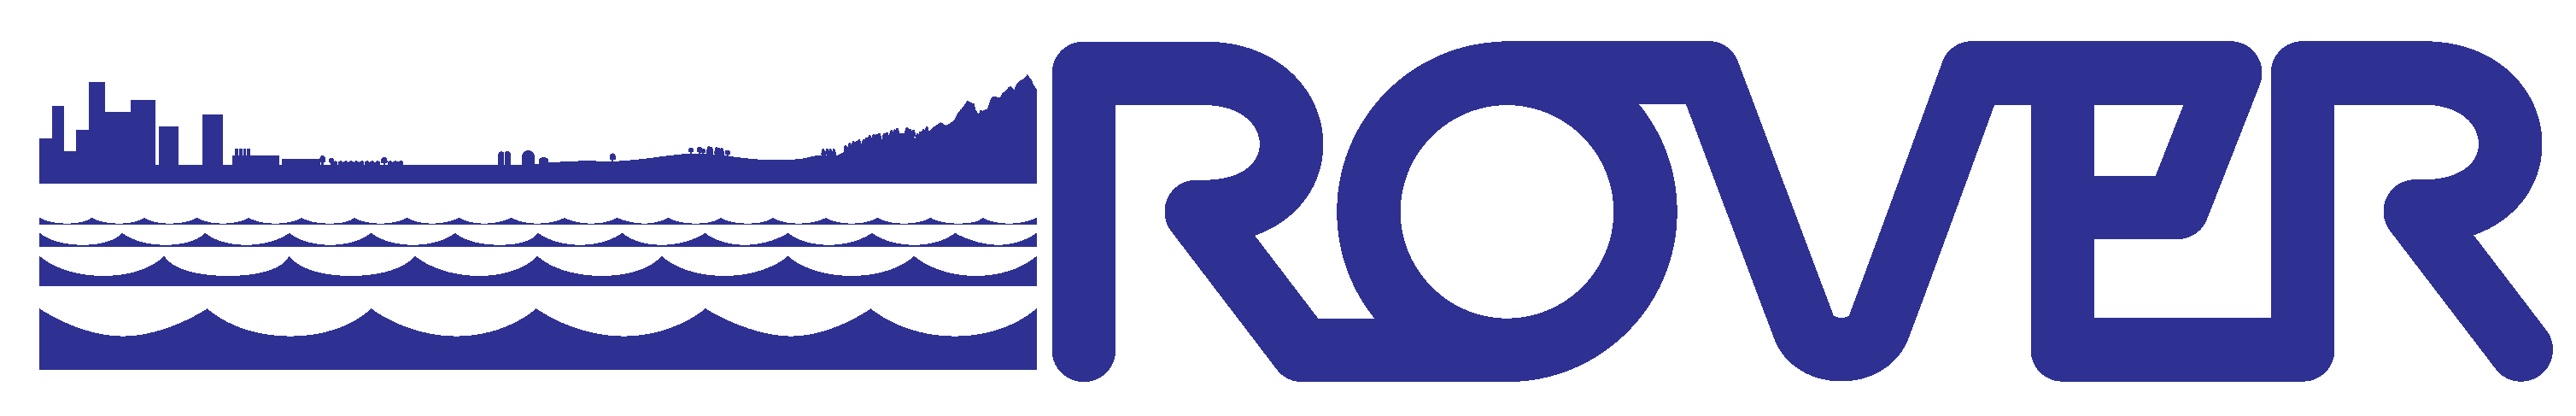 ROVER Logo